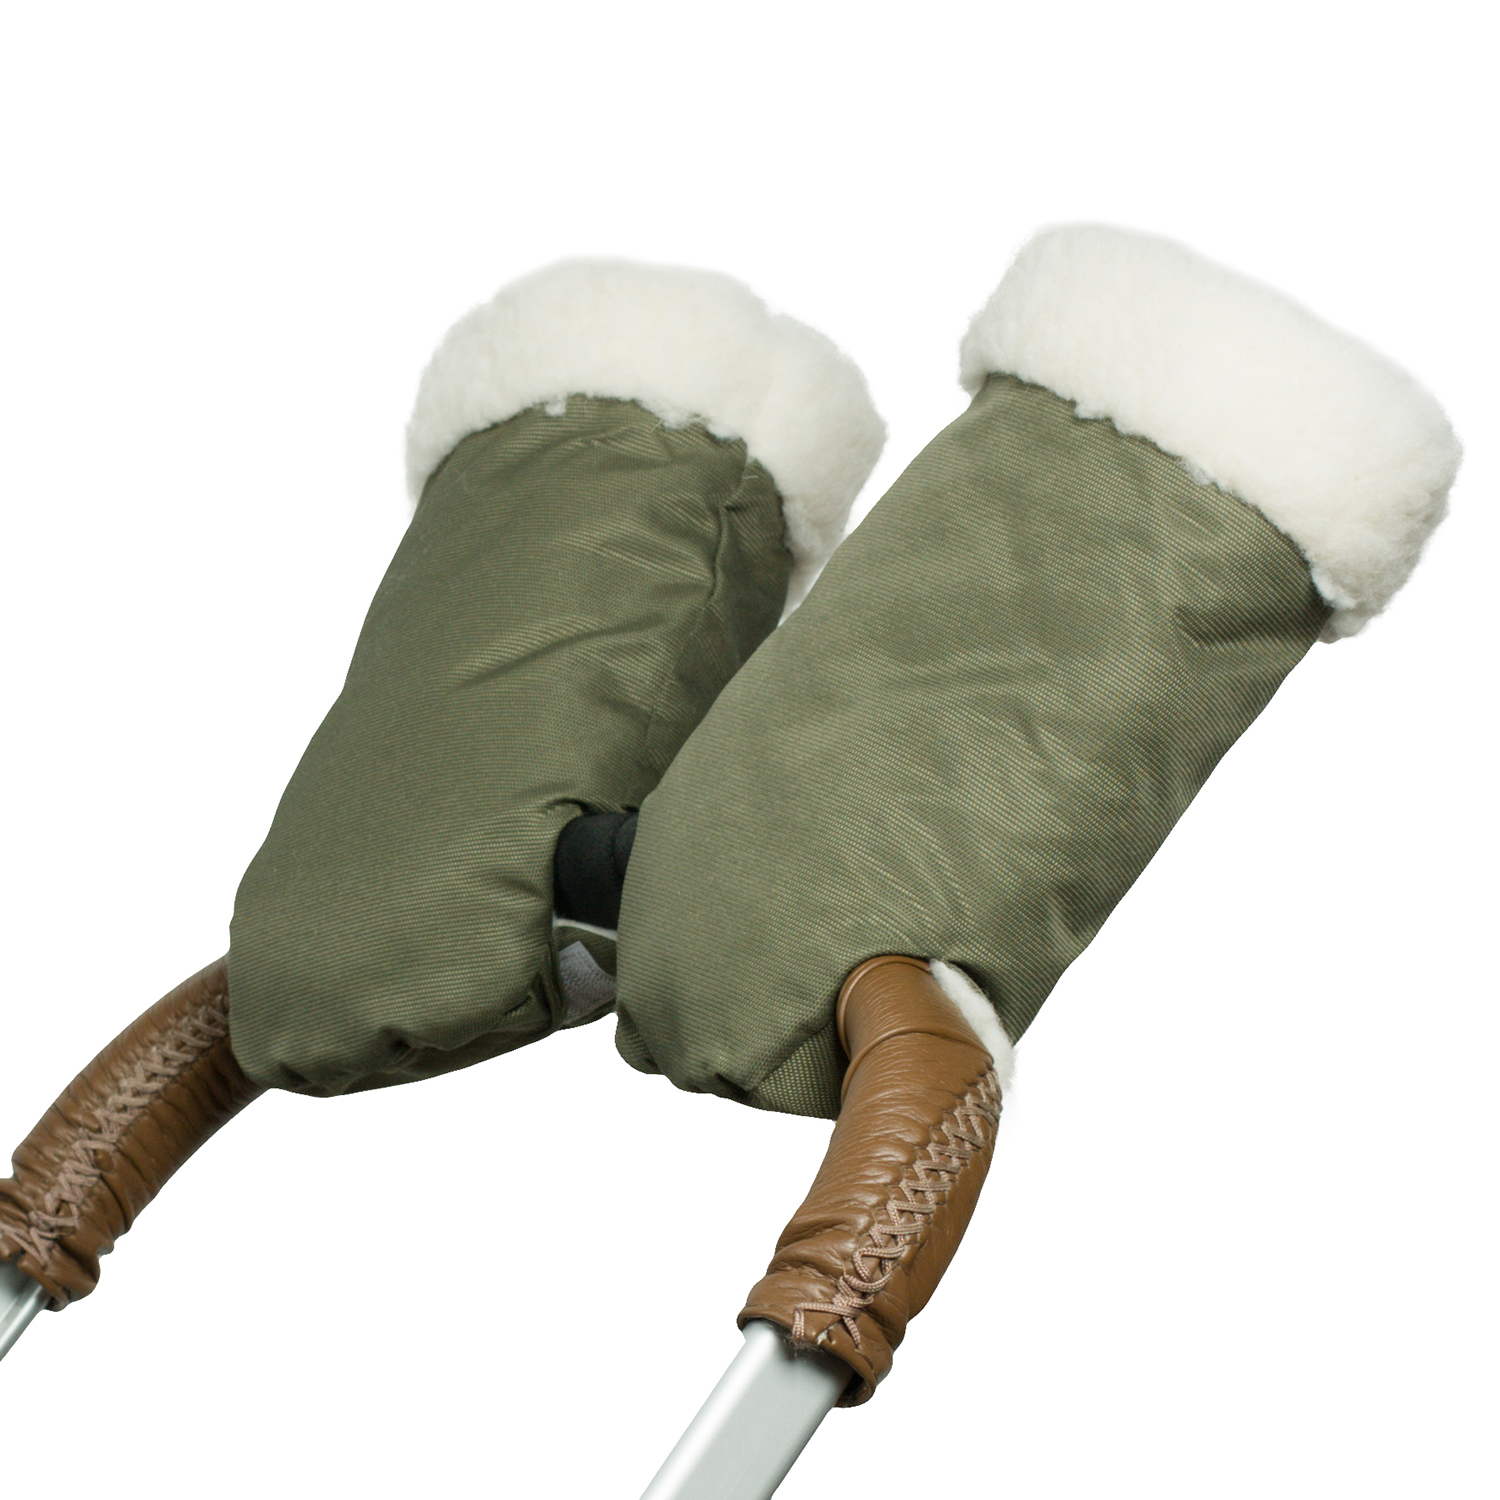 Муфта-рукавички для коляски Чудо-чадо меховая Прайм оливковая МРМ01-001 - фото 4